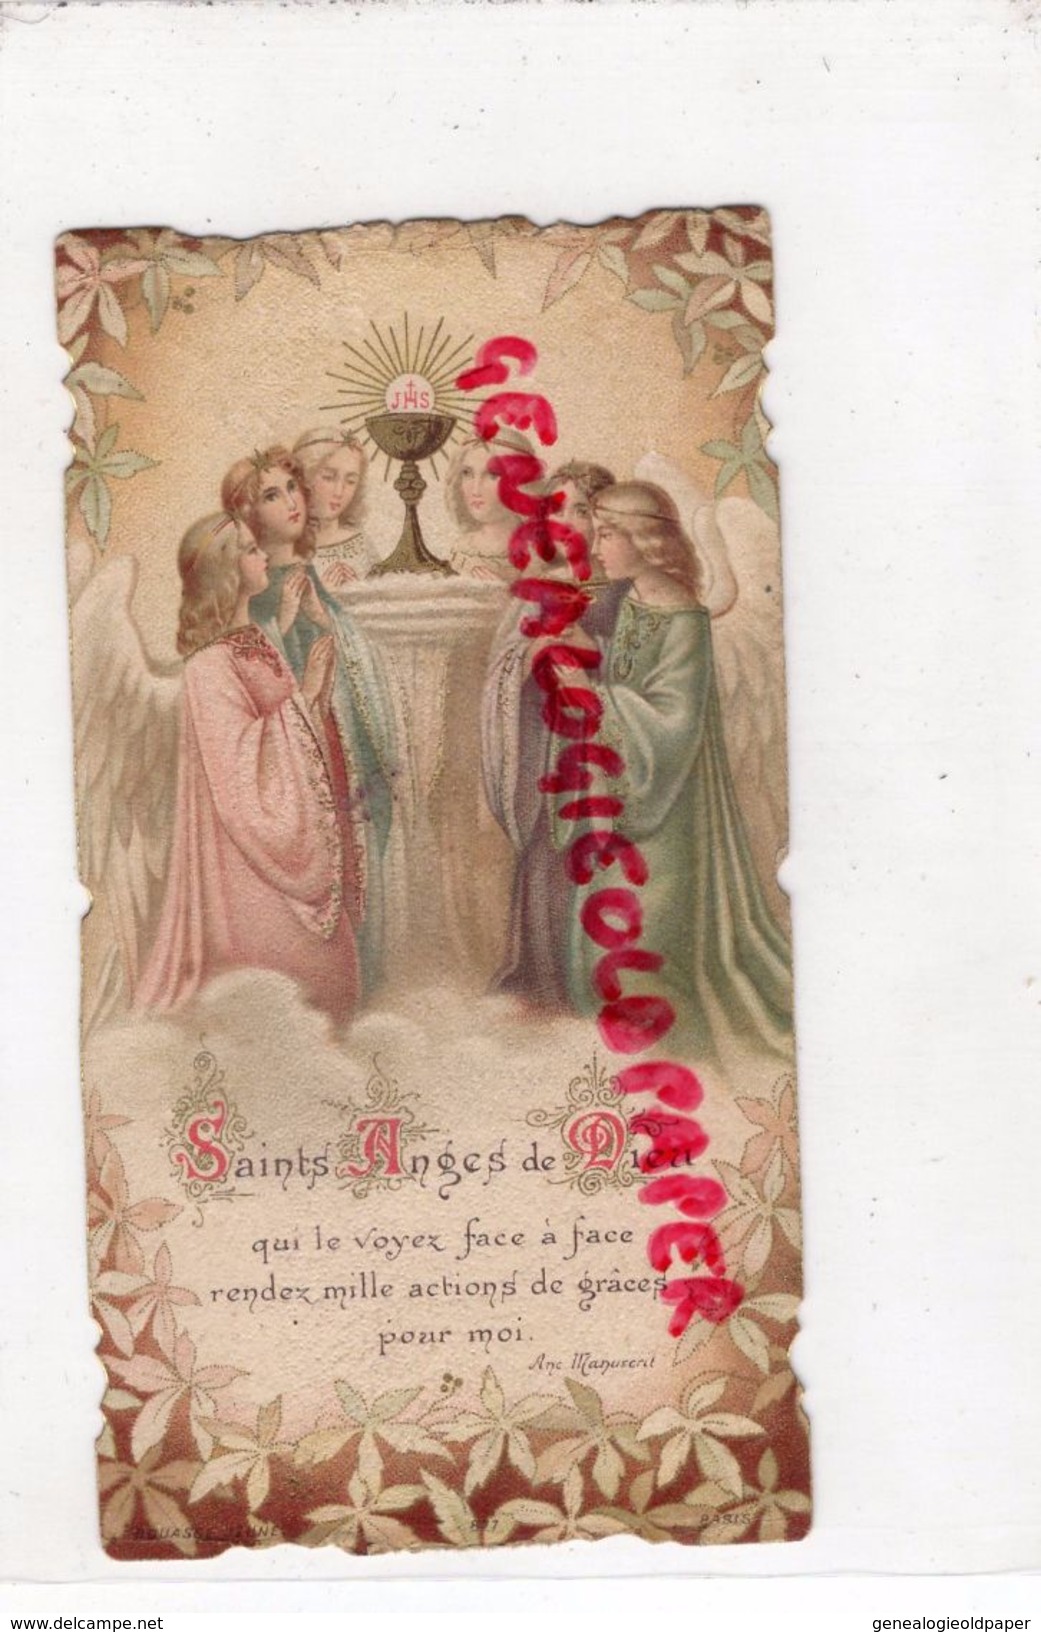 87 - LIMOGES- CHAPELLE ECOLE ST SAINT MARTIAL- SOUVENIR 1 ERE COMMUNION 8 JUIN 1902-ROBERT LAROUDIE- JEANNE D' ARC -ANGE - Devotion Images